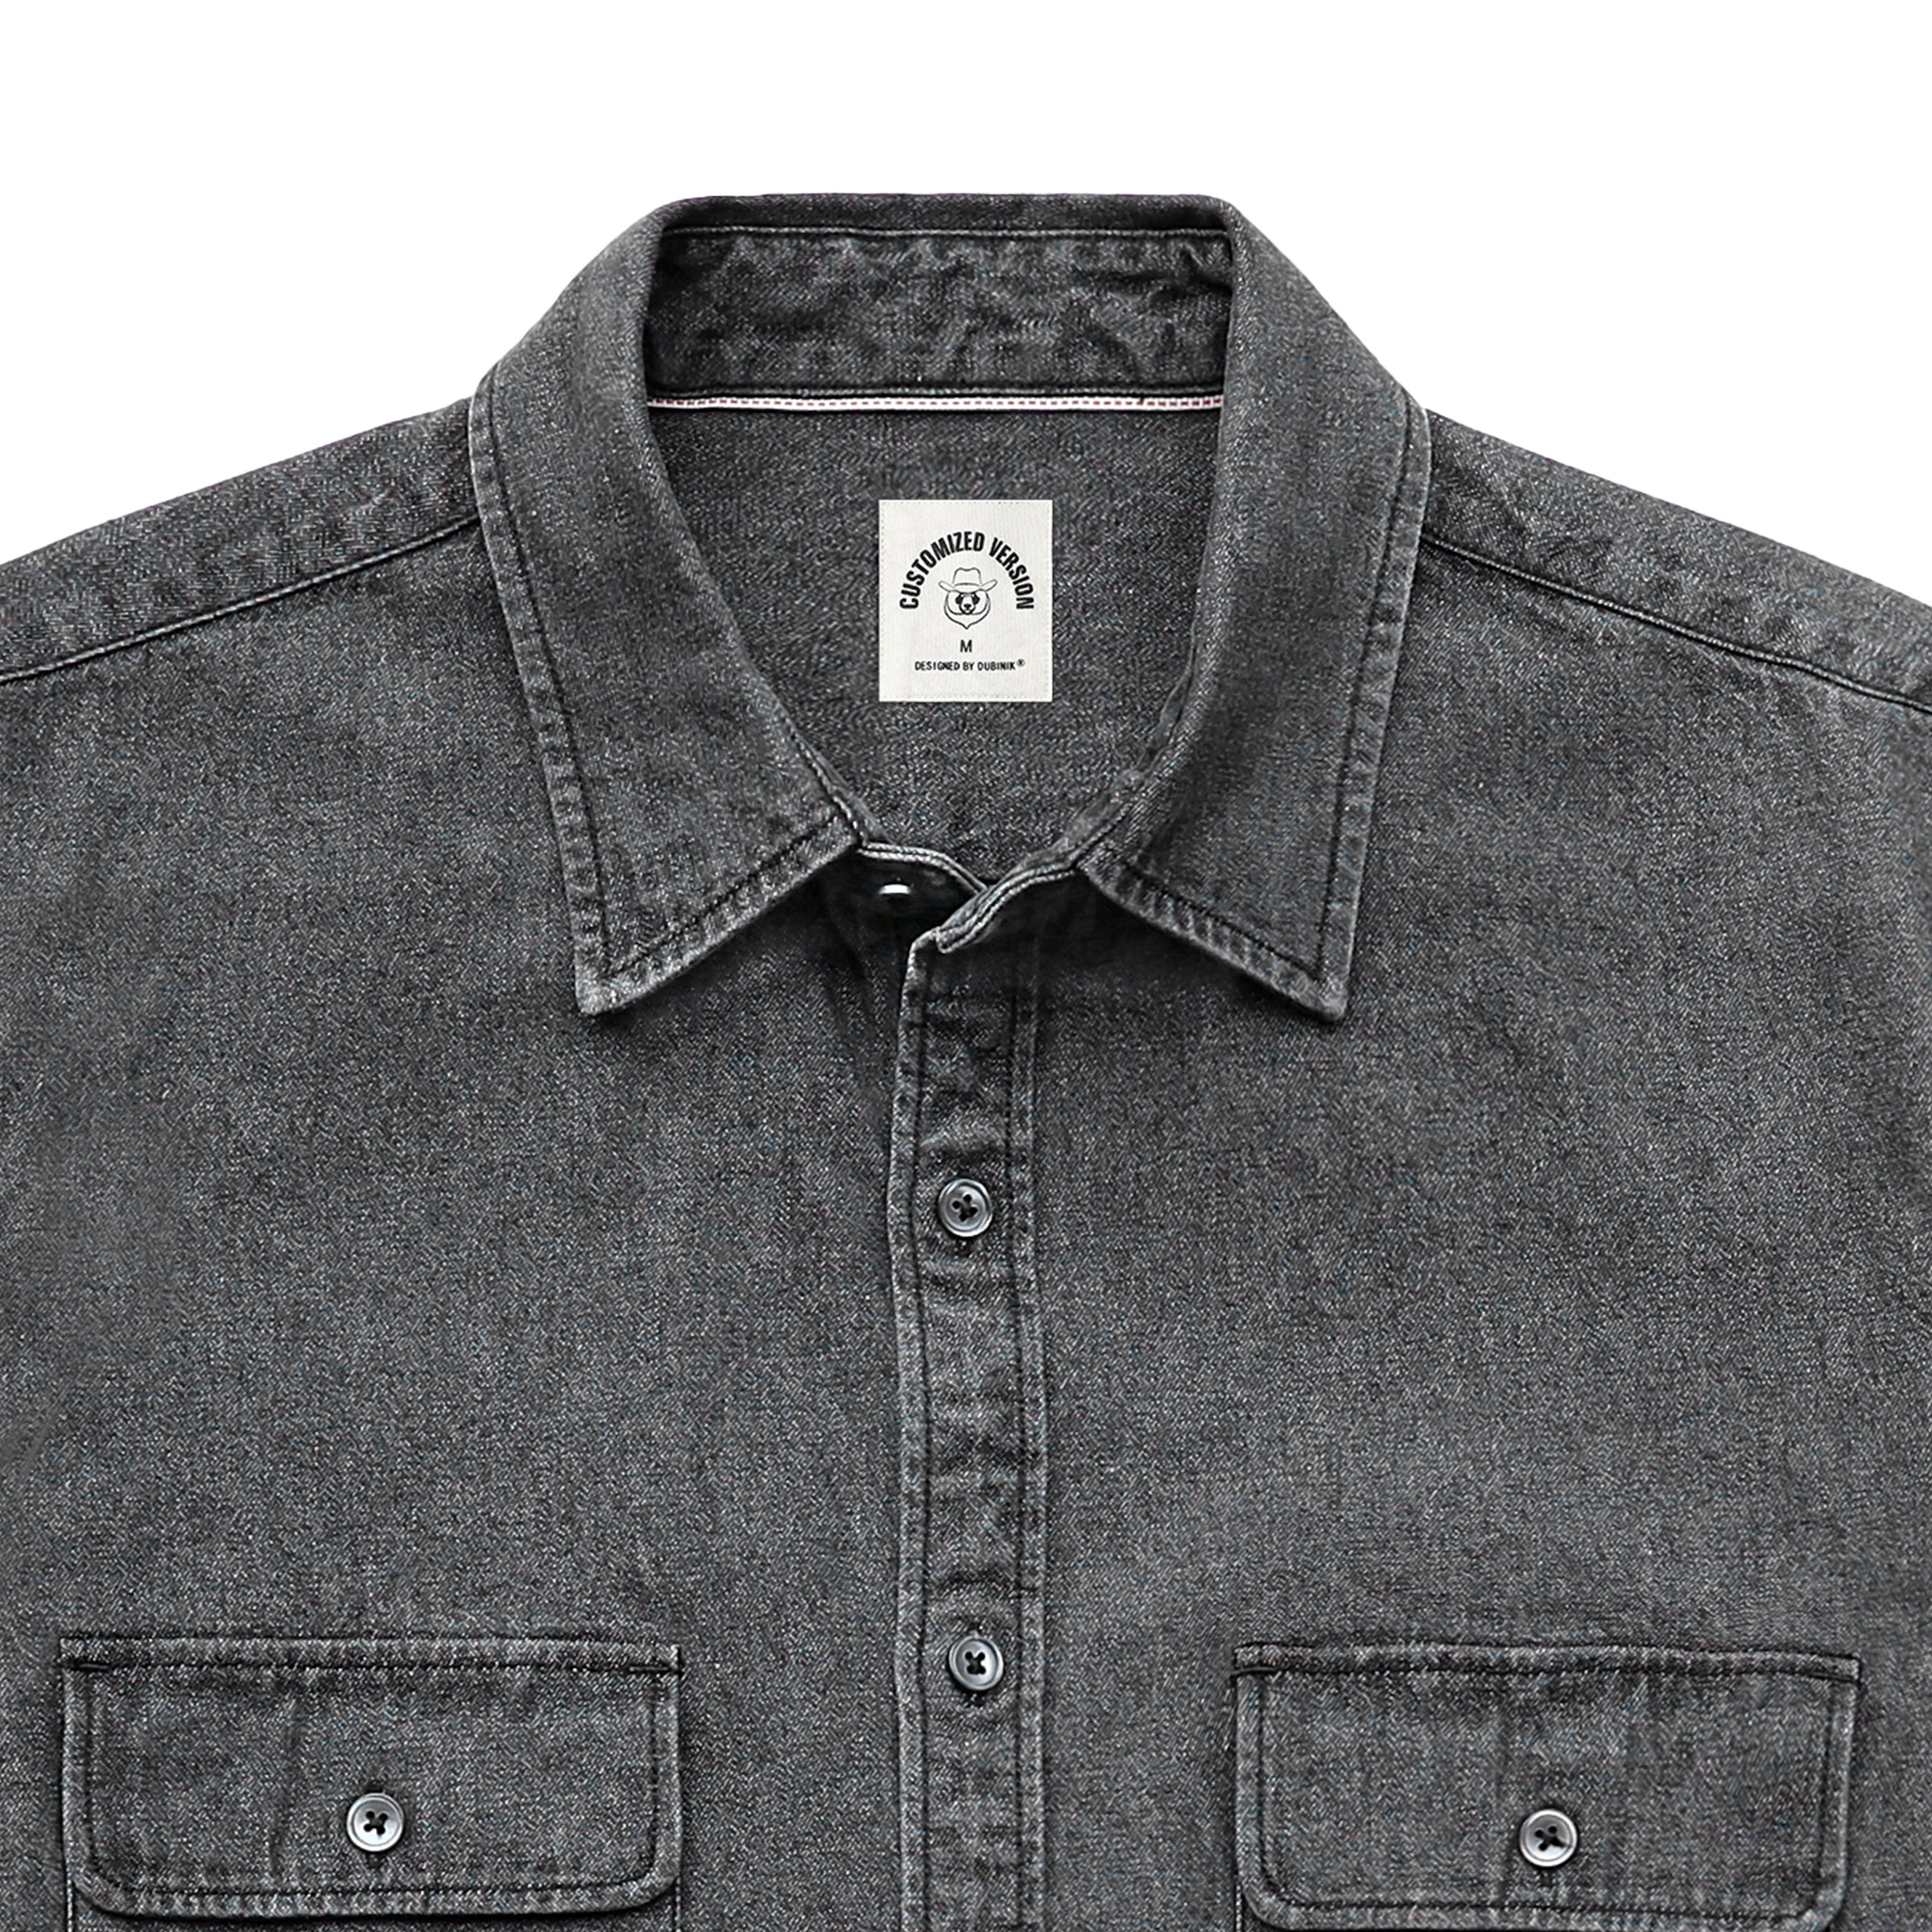 Men's cotton long sleeve denim shirt #4503